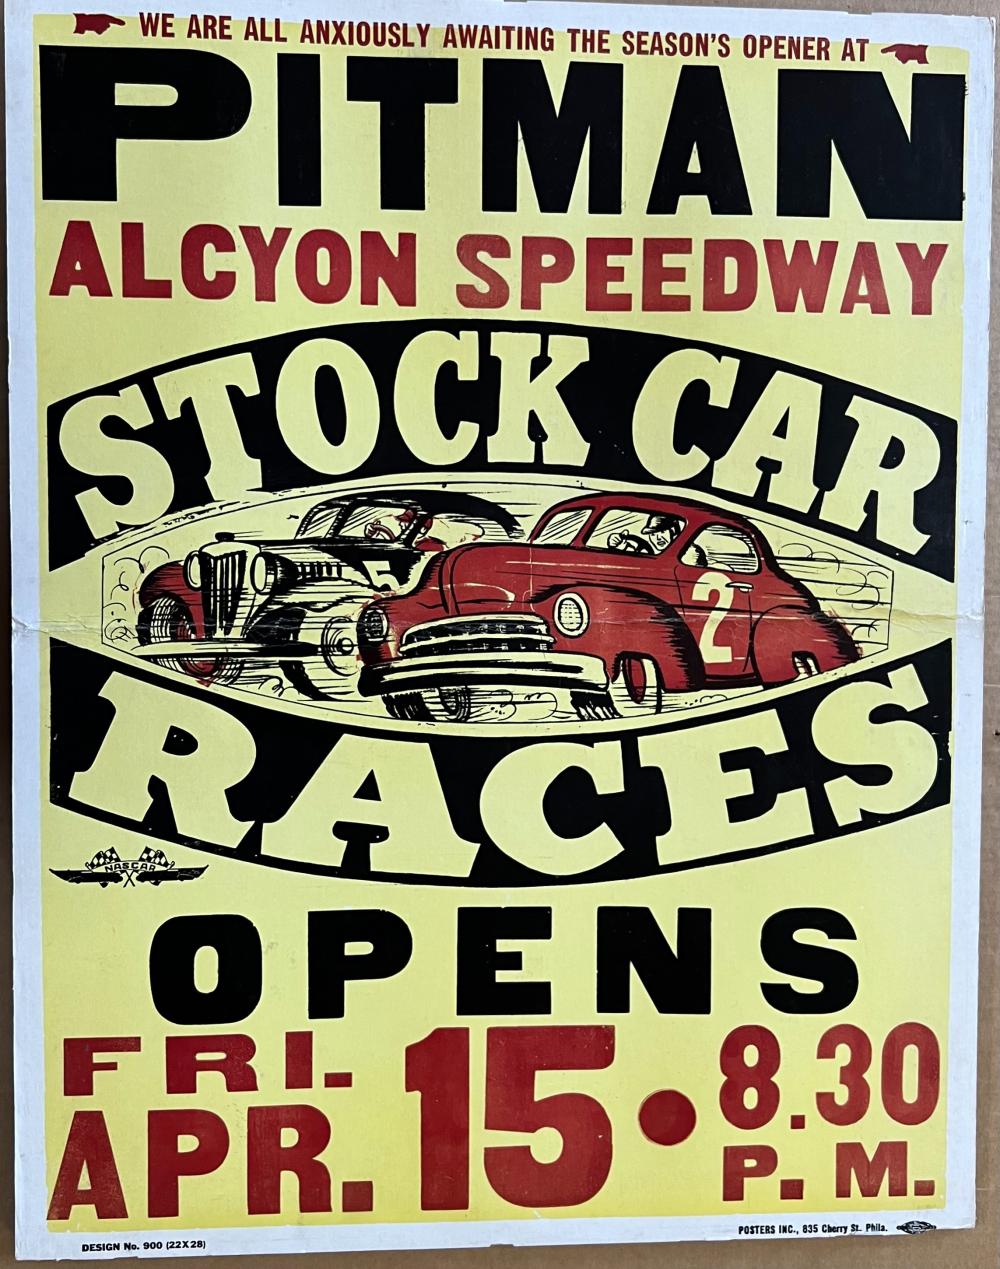 PITMAN ALCYON NJ STOCK CAR RACES 2e28ff